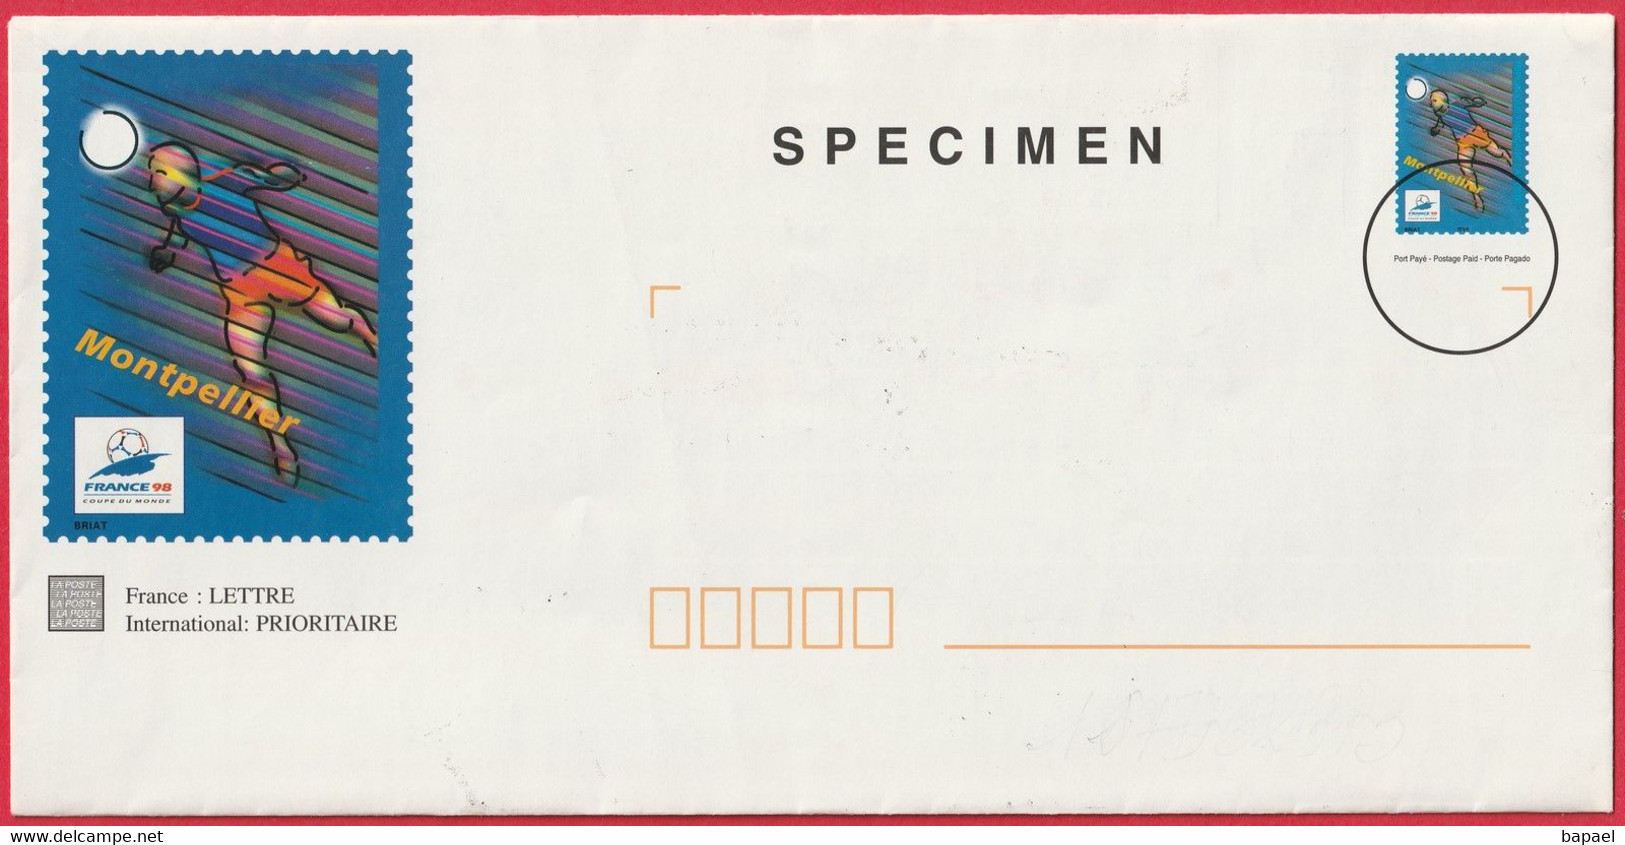 Enveloppe Entier Postal - Foot France 98 (Montpellier) - Surchargée Spécimen (Recto-Verso) - Specimen